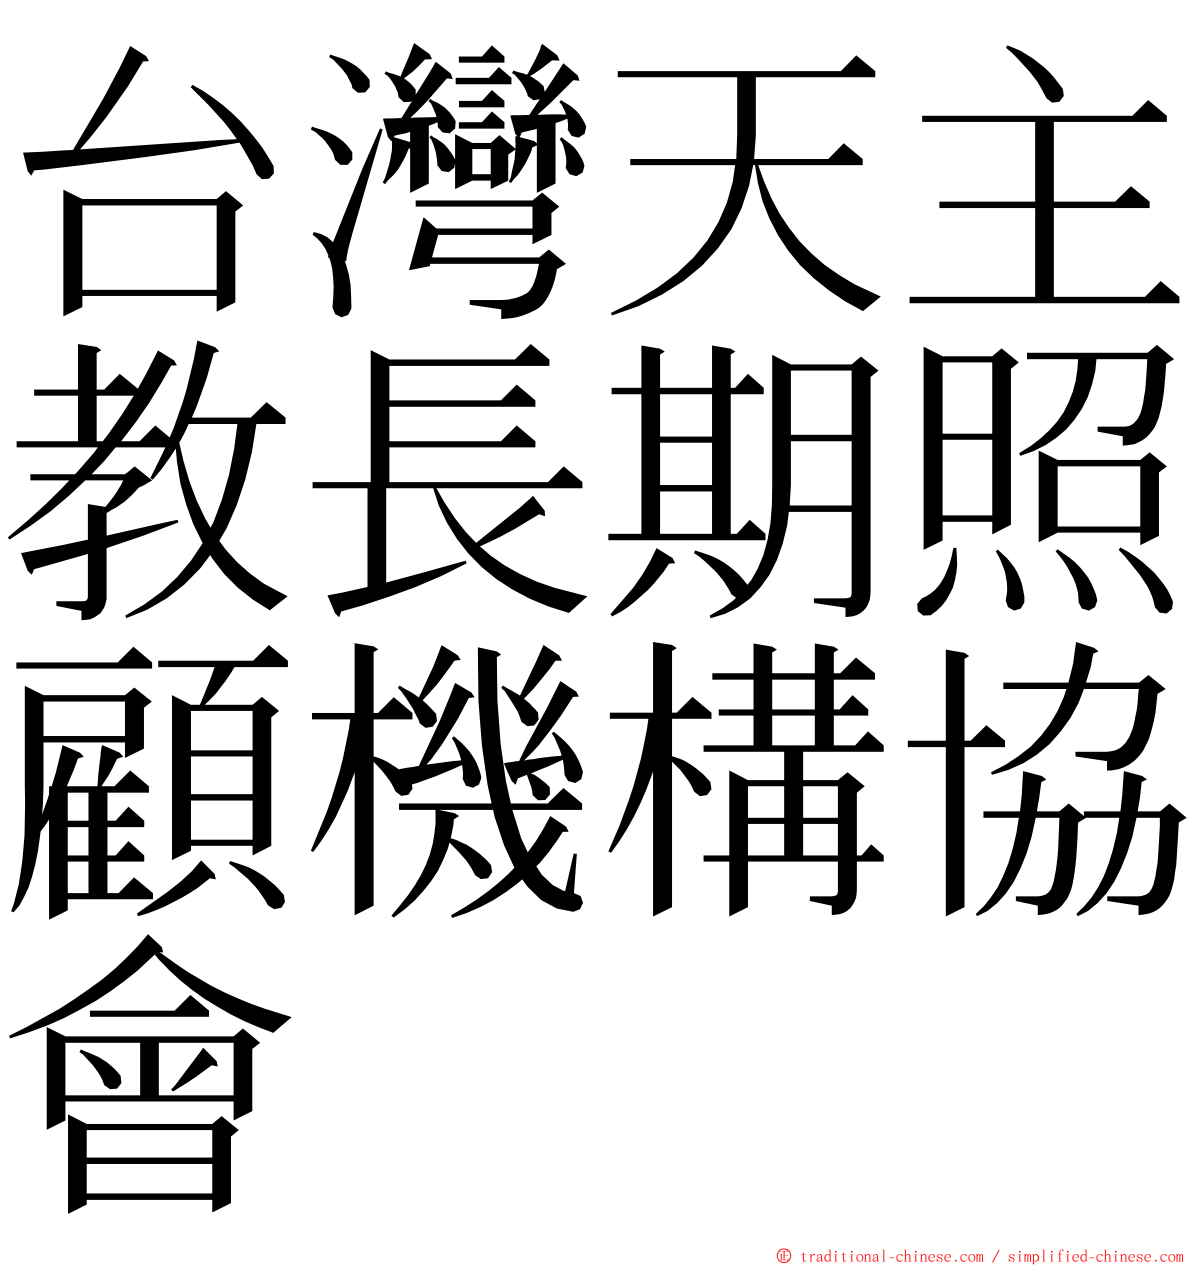 台灣天主教長期照顧機構協會 ming font